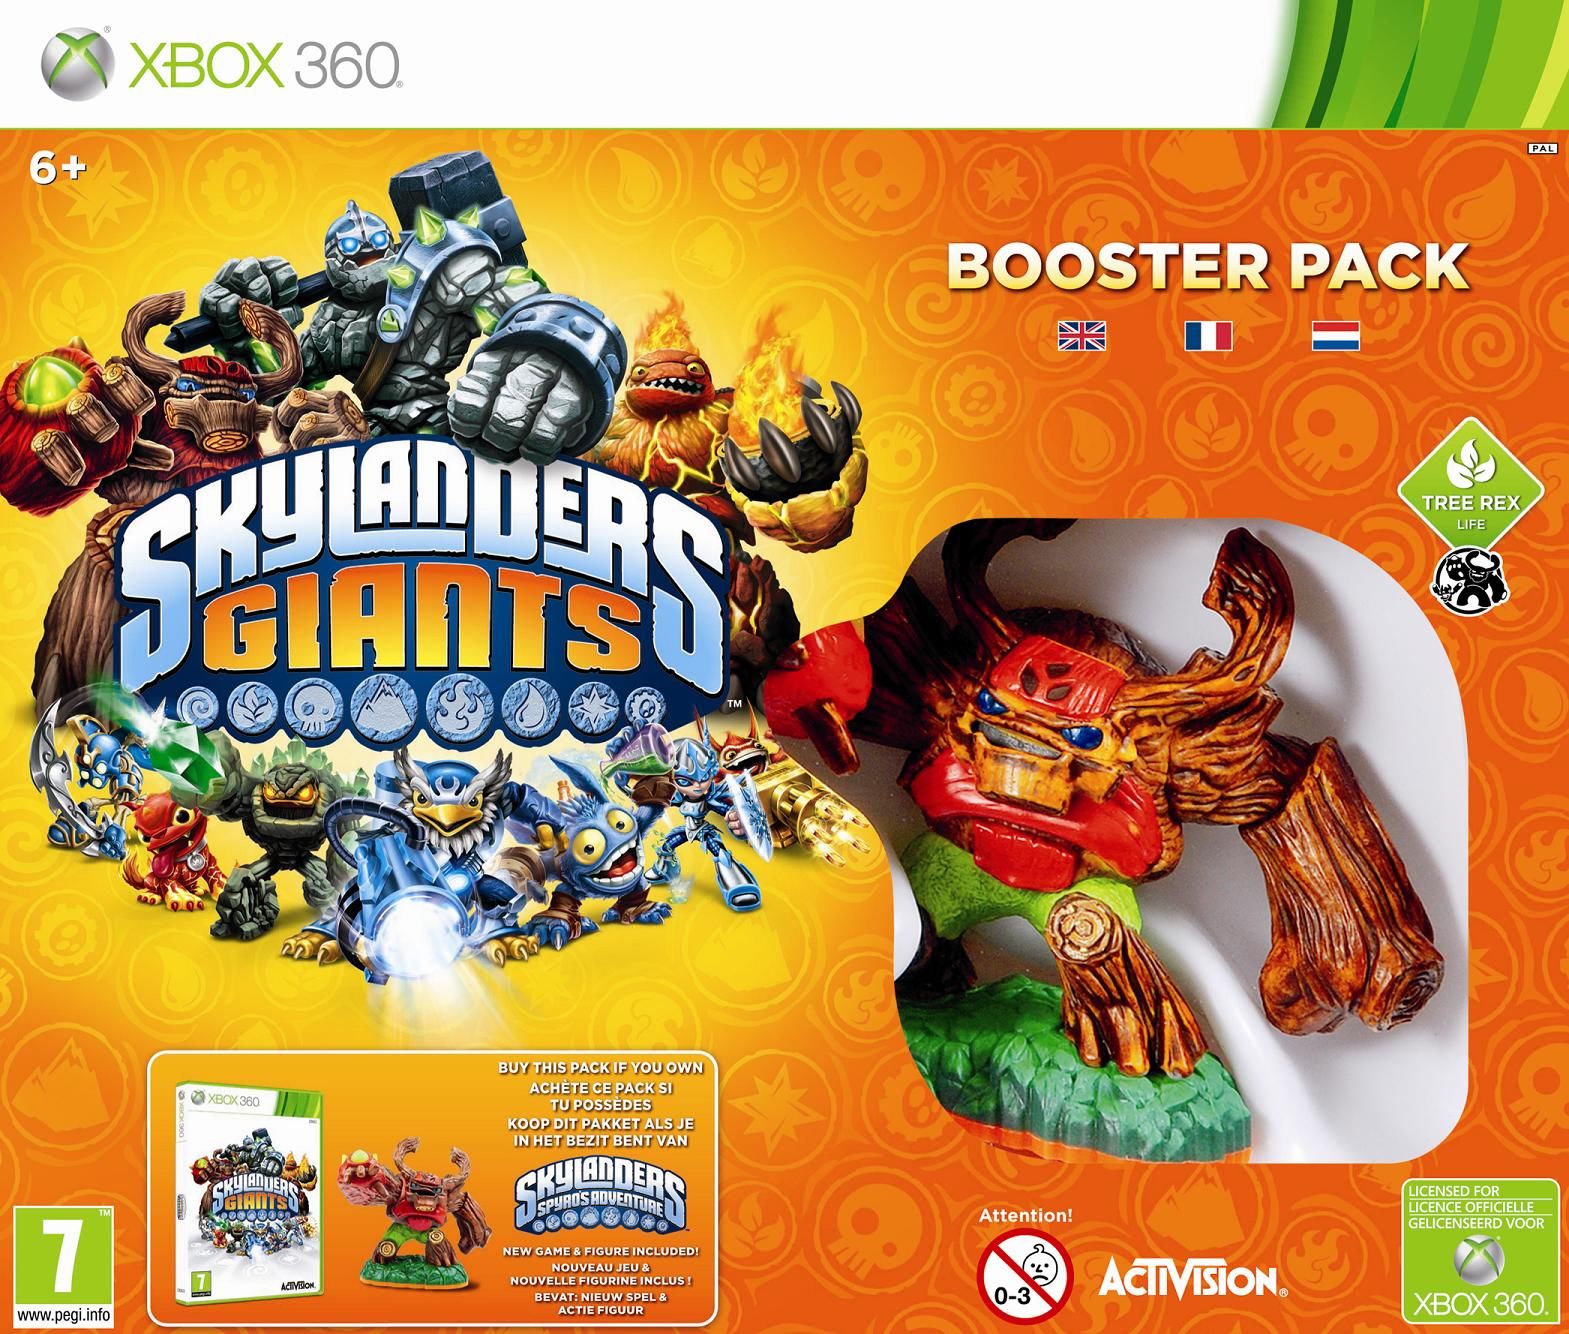 Skylanders 2 Giants Booster Pack